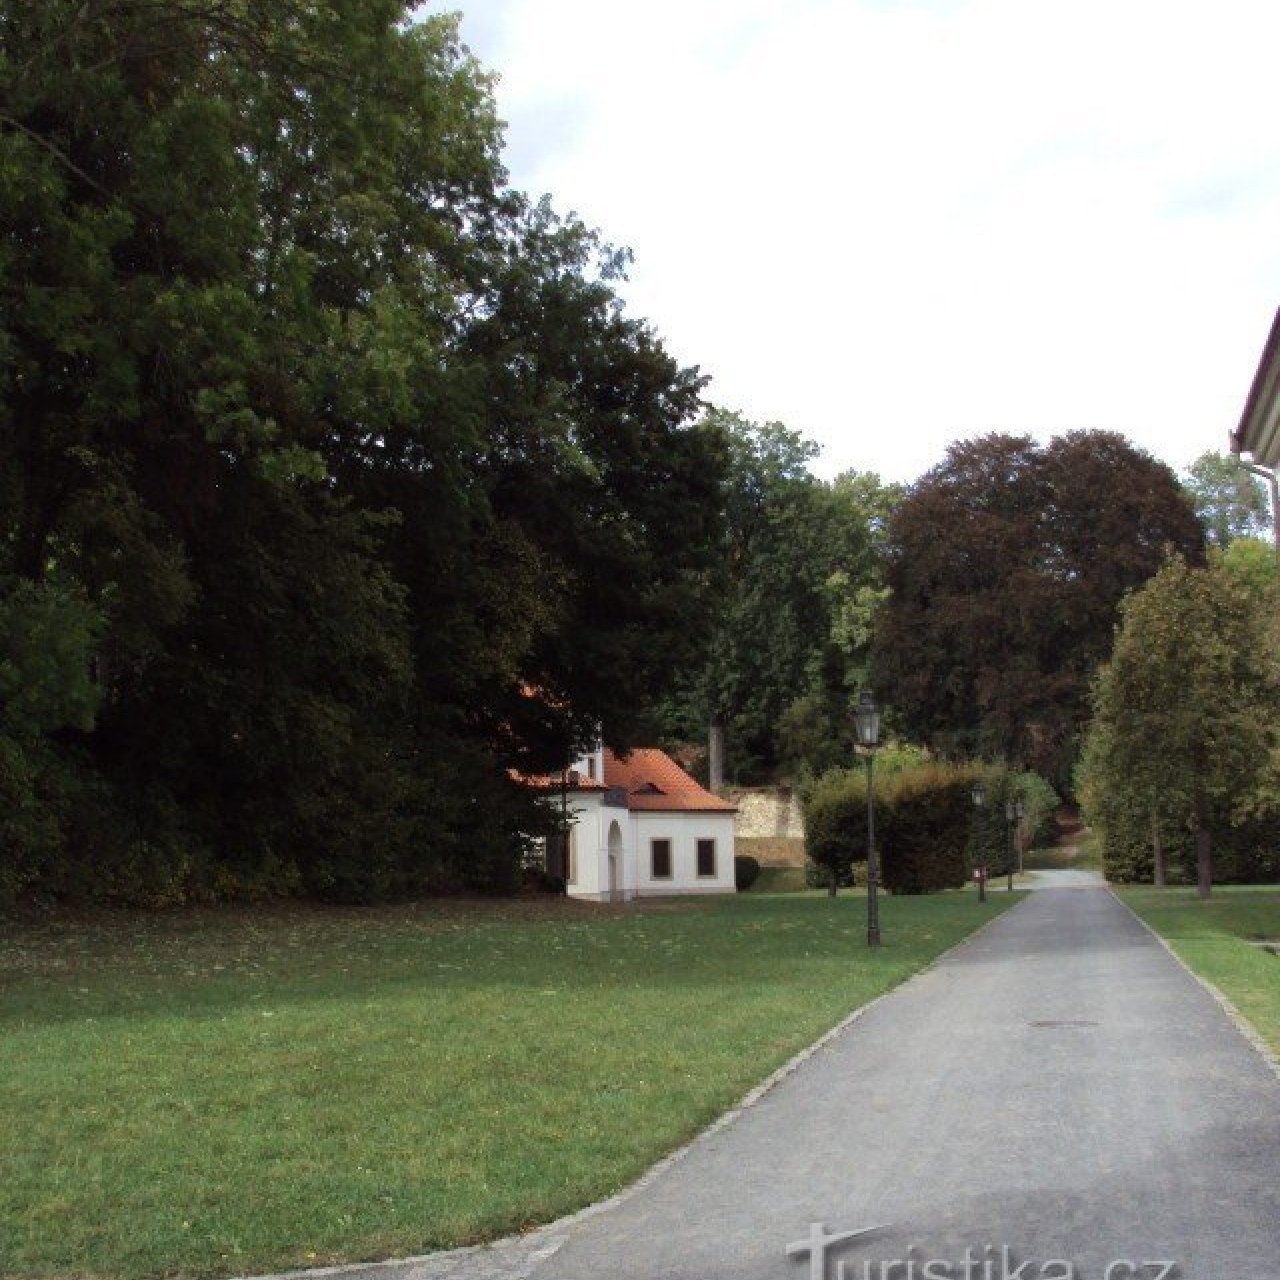 Břevnovský klášter - první mužský klášter v Čechách